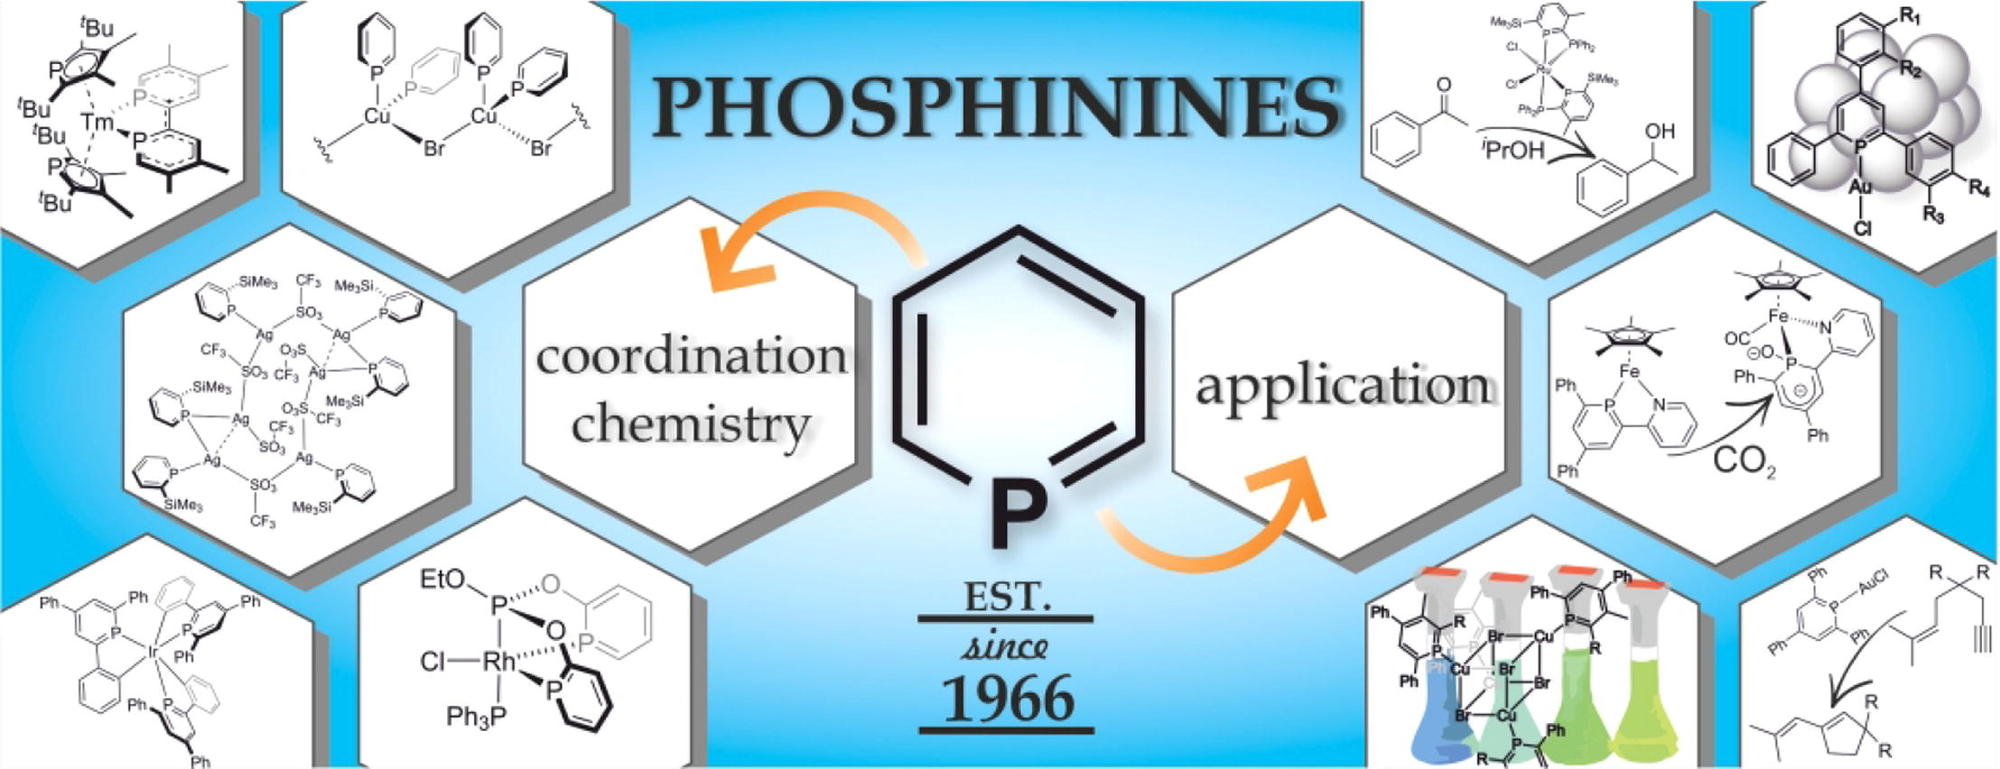 Im Fokus steht die Koordinationschemie von Phosphininen und deren Anwendungsgebiete